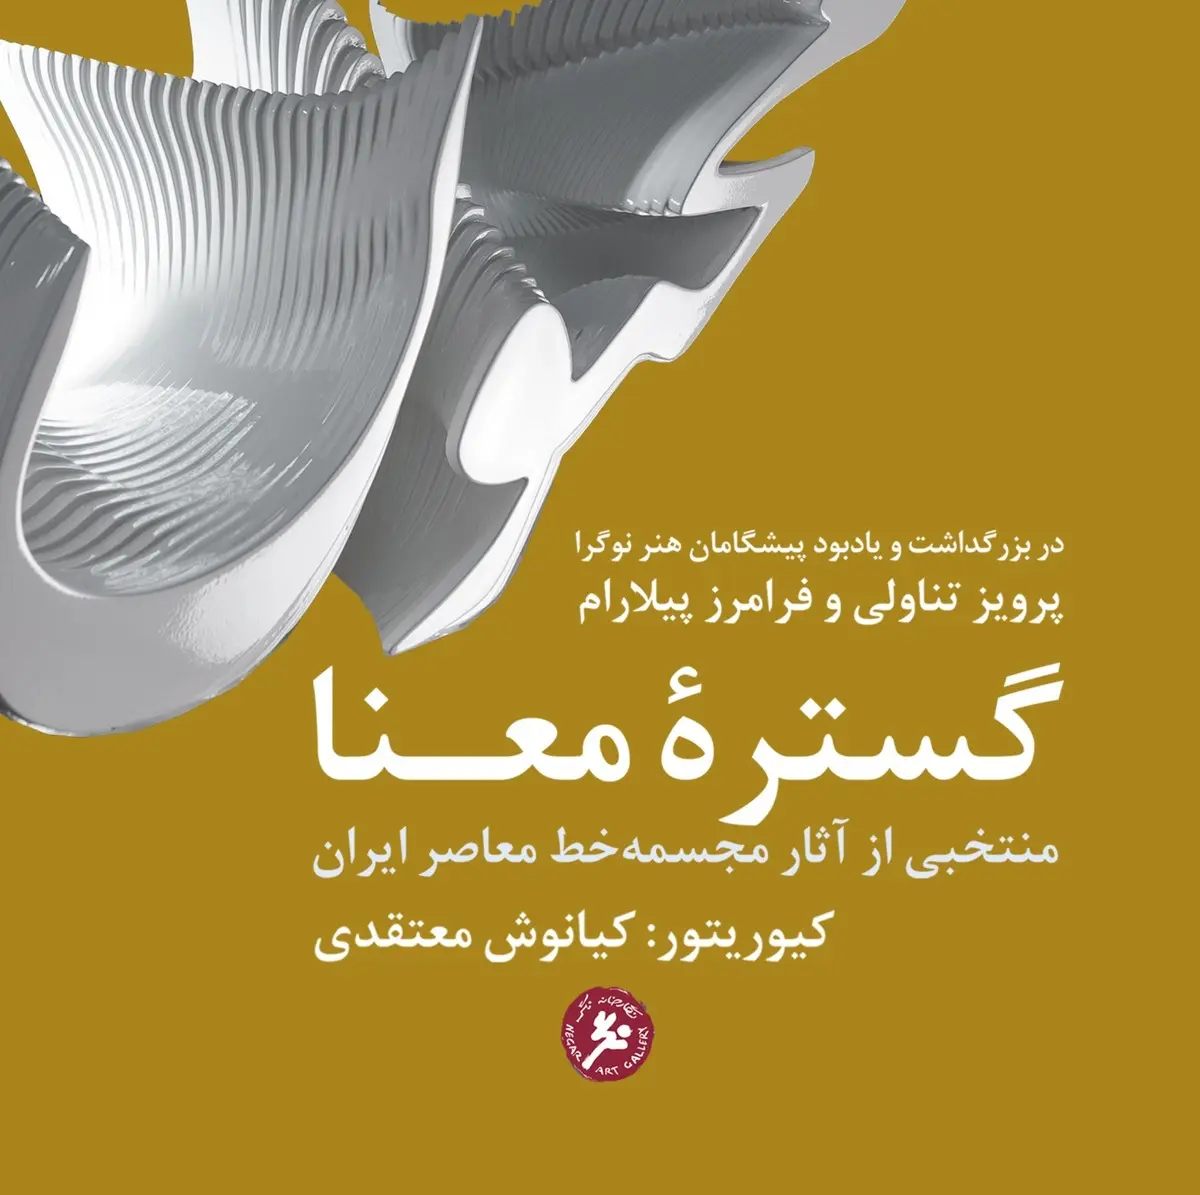 نمایشگاه "گستره معنا", منتخبی از آثار مجسمه‌خط معاصر ایران 